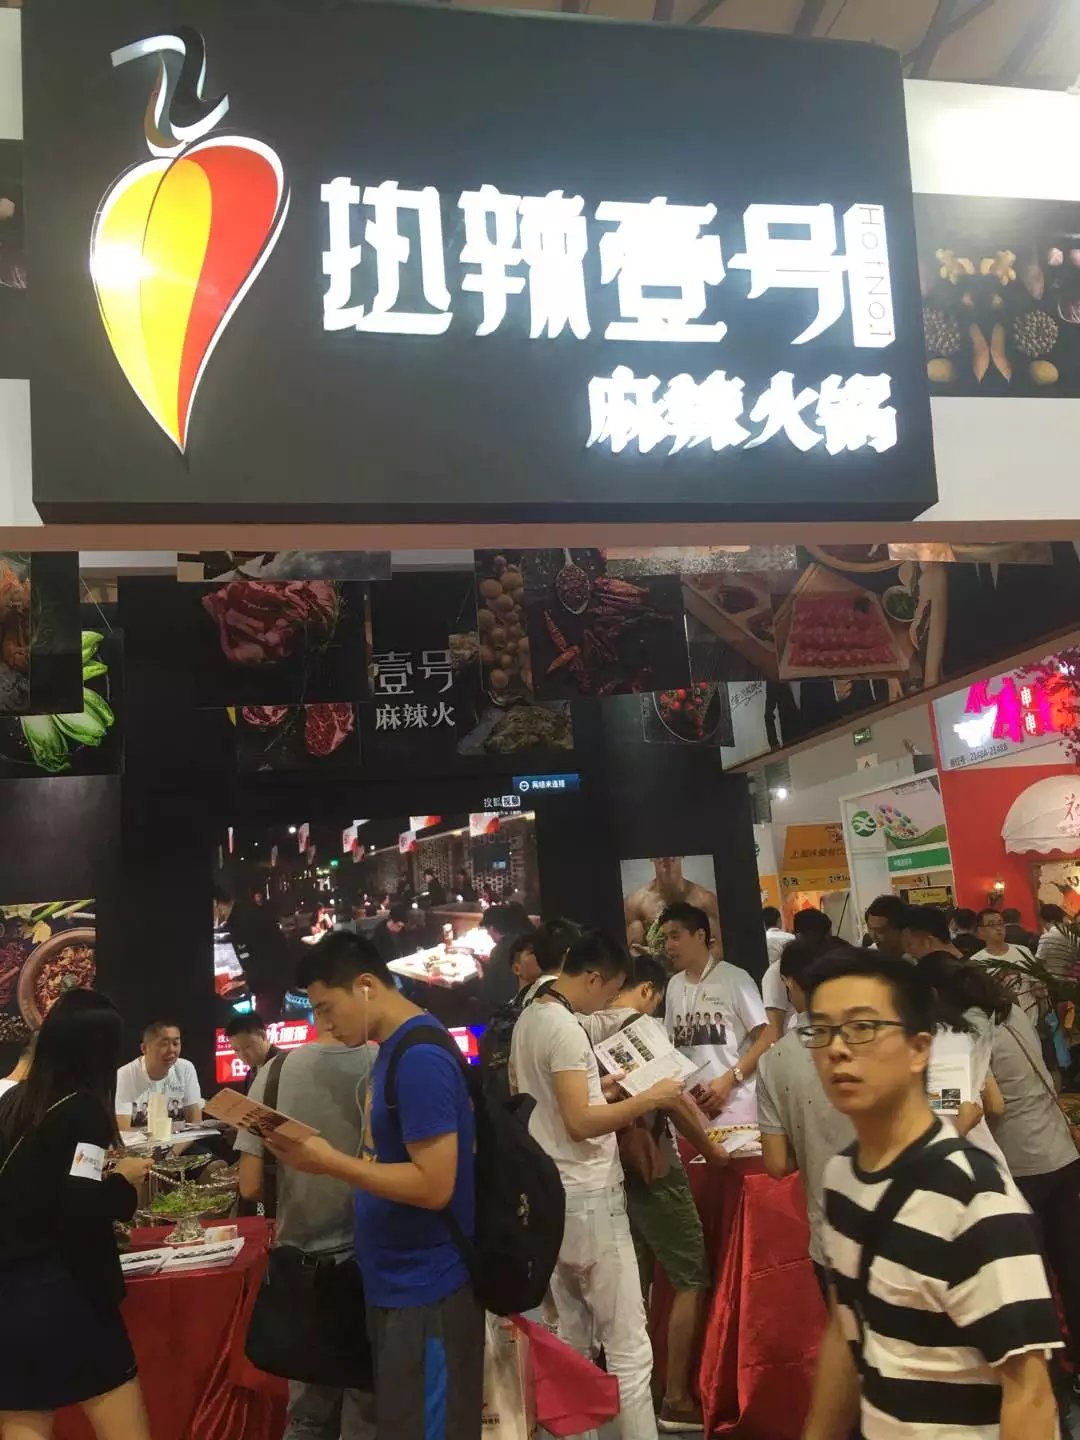 2019上海餐饮连锁加盟与特许经营展览会